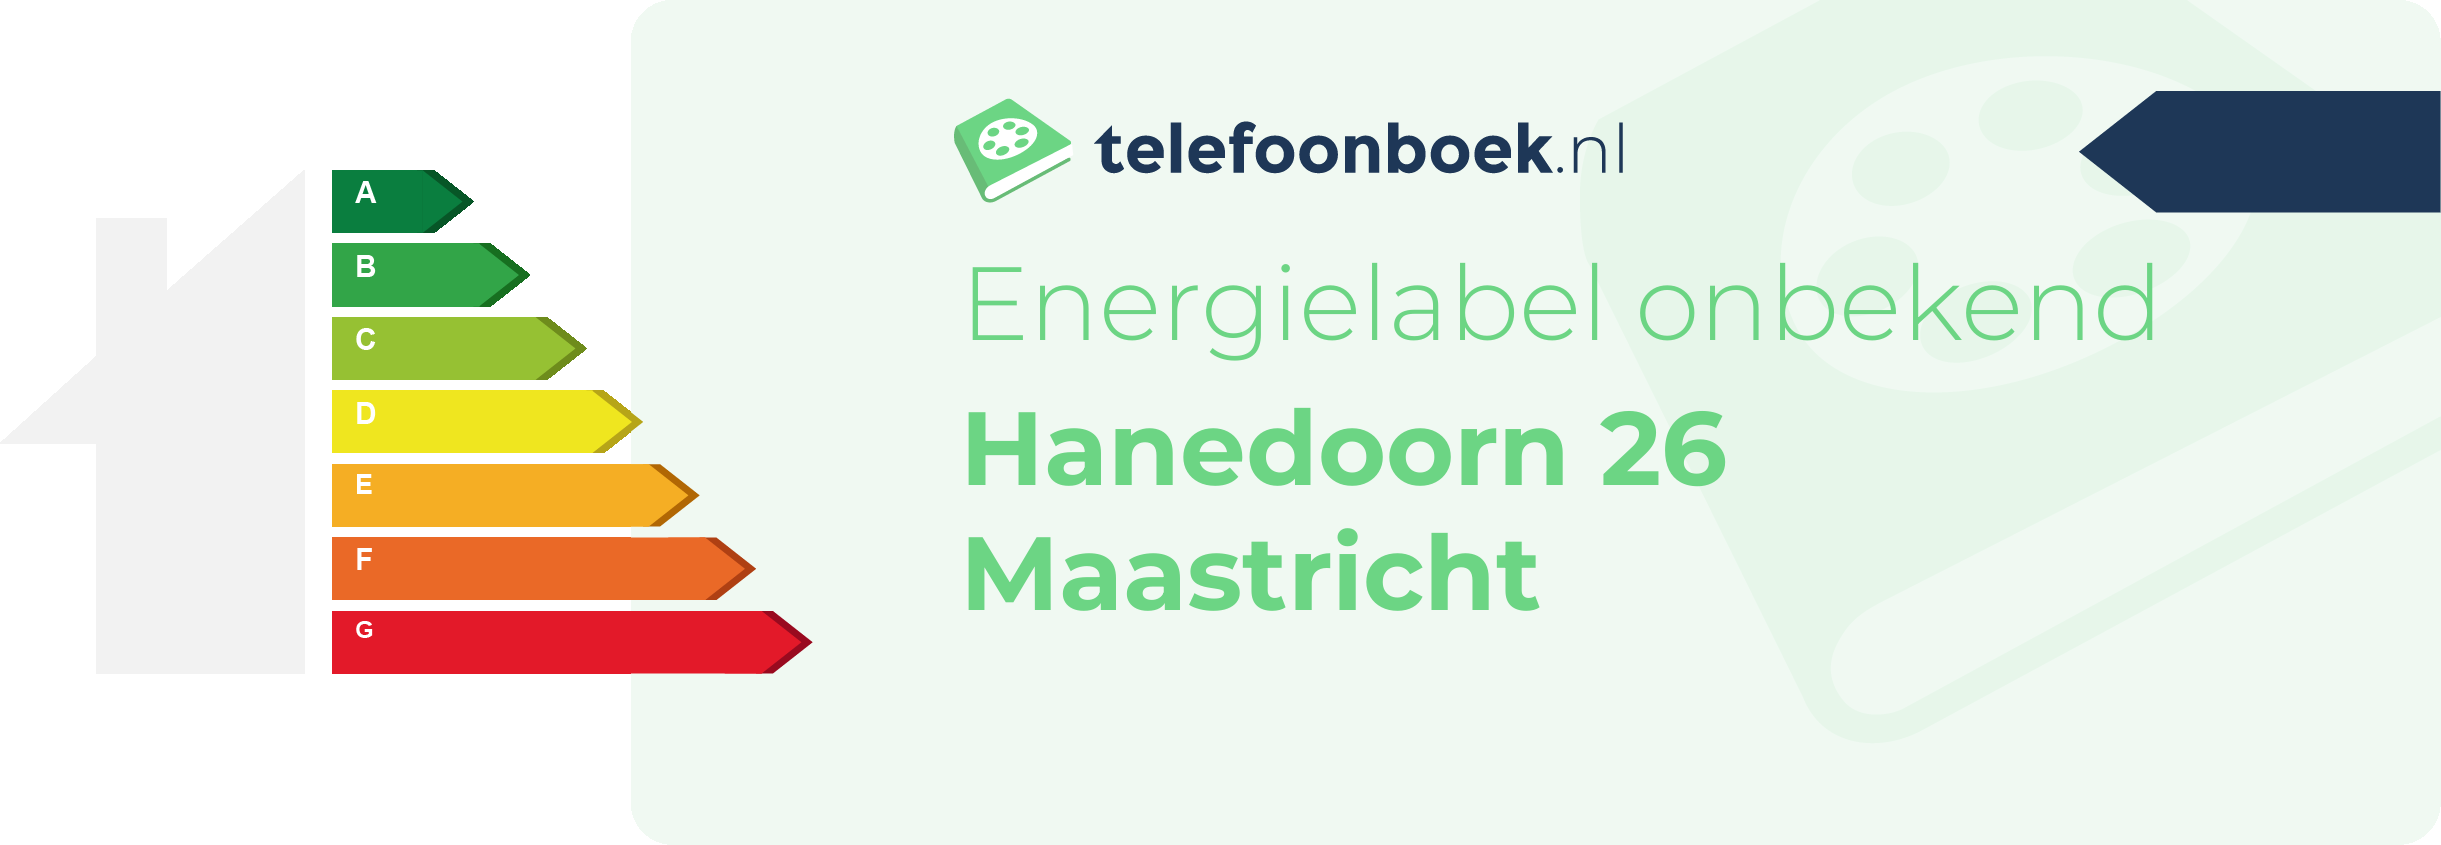 Energielabel Hanedoorn 26 Maastricht